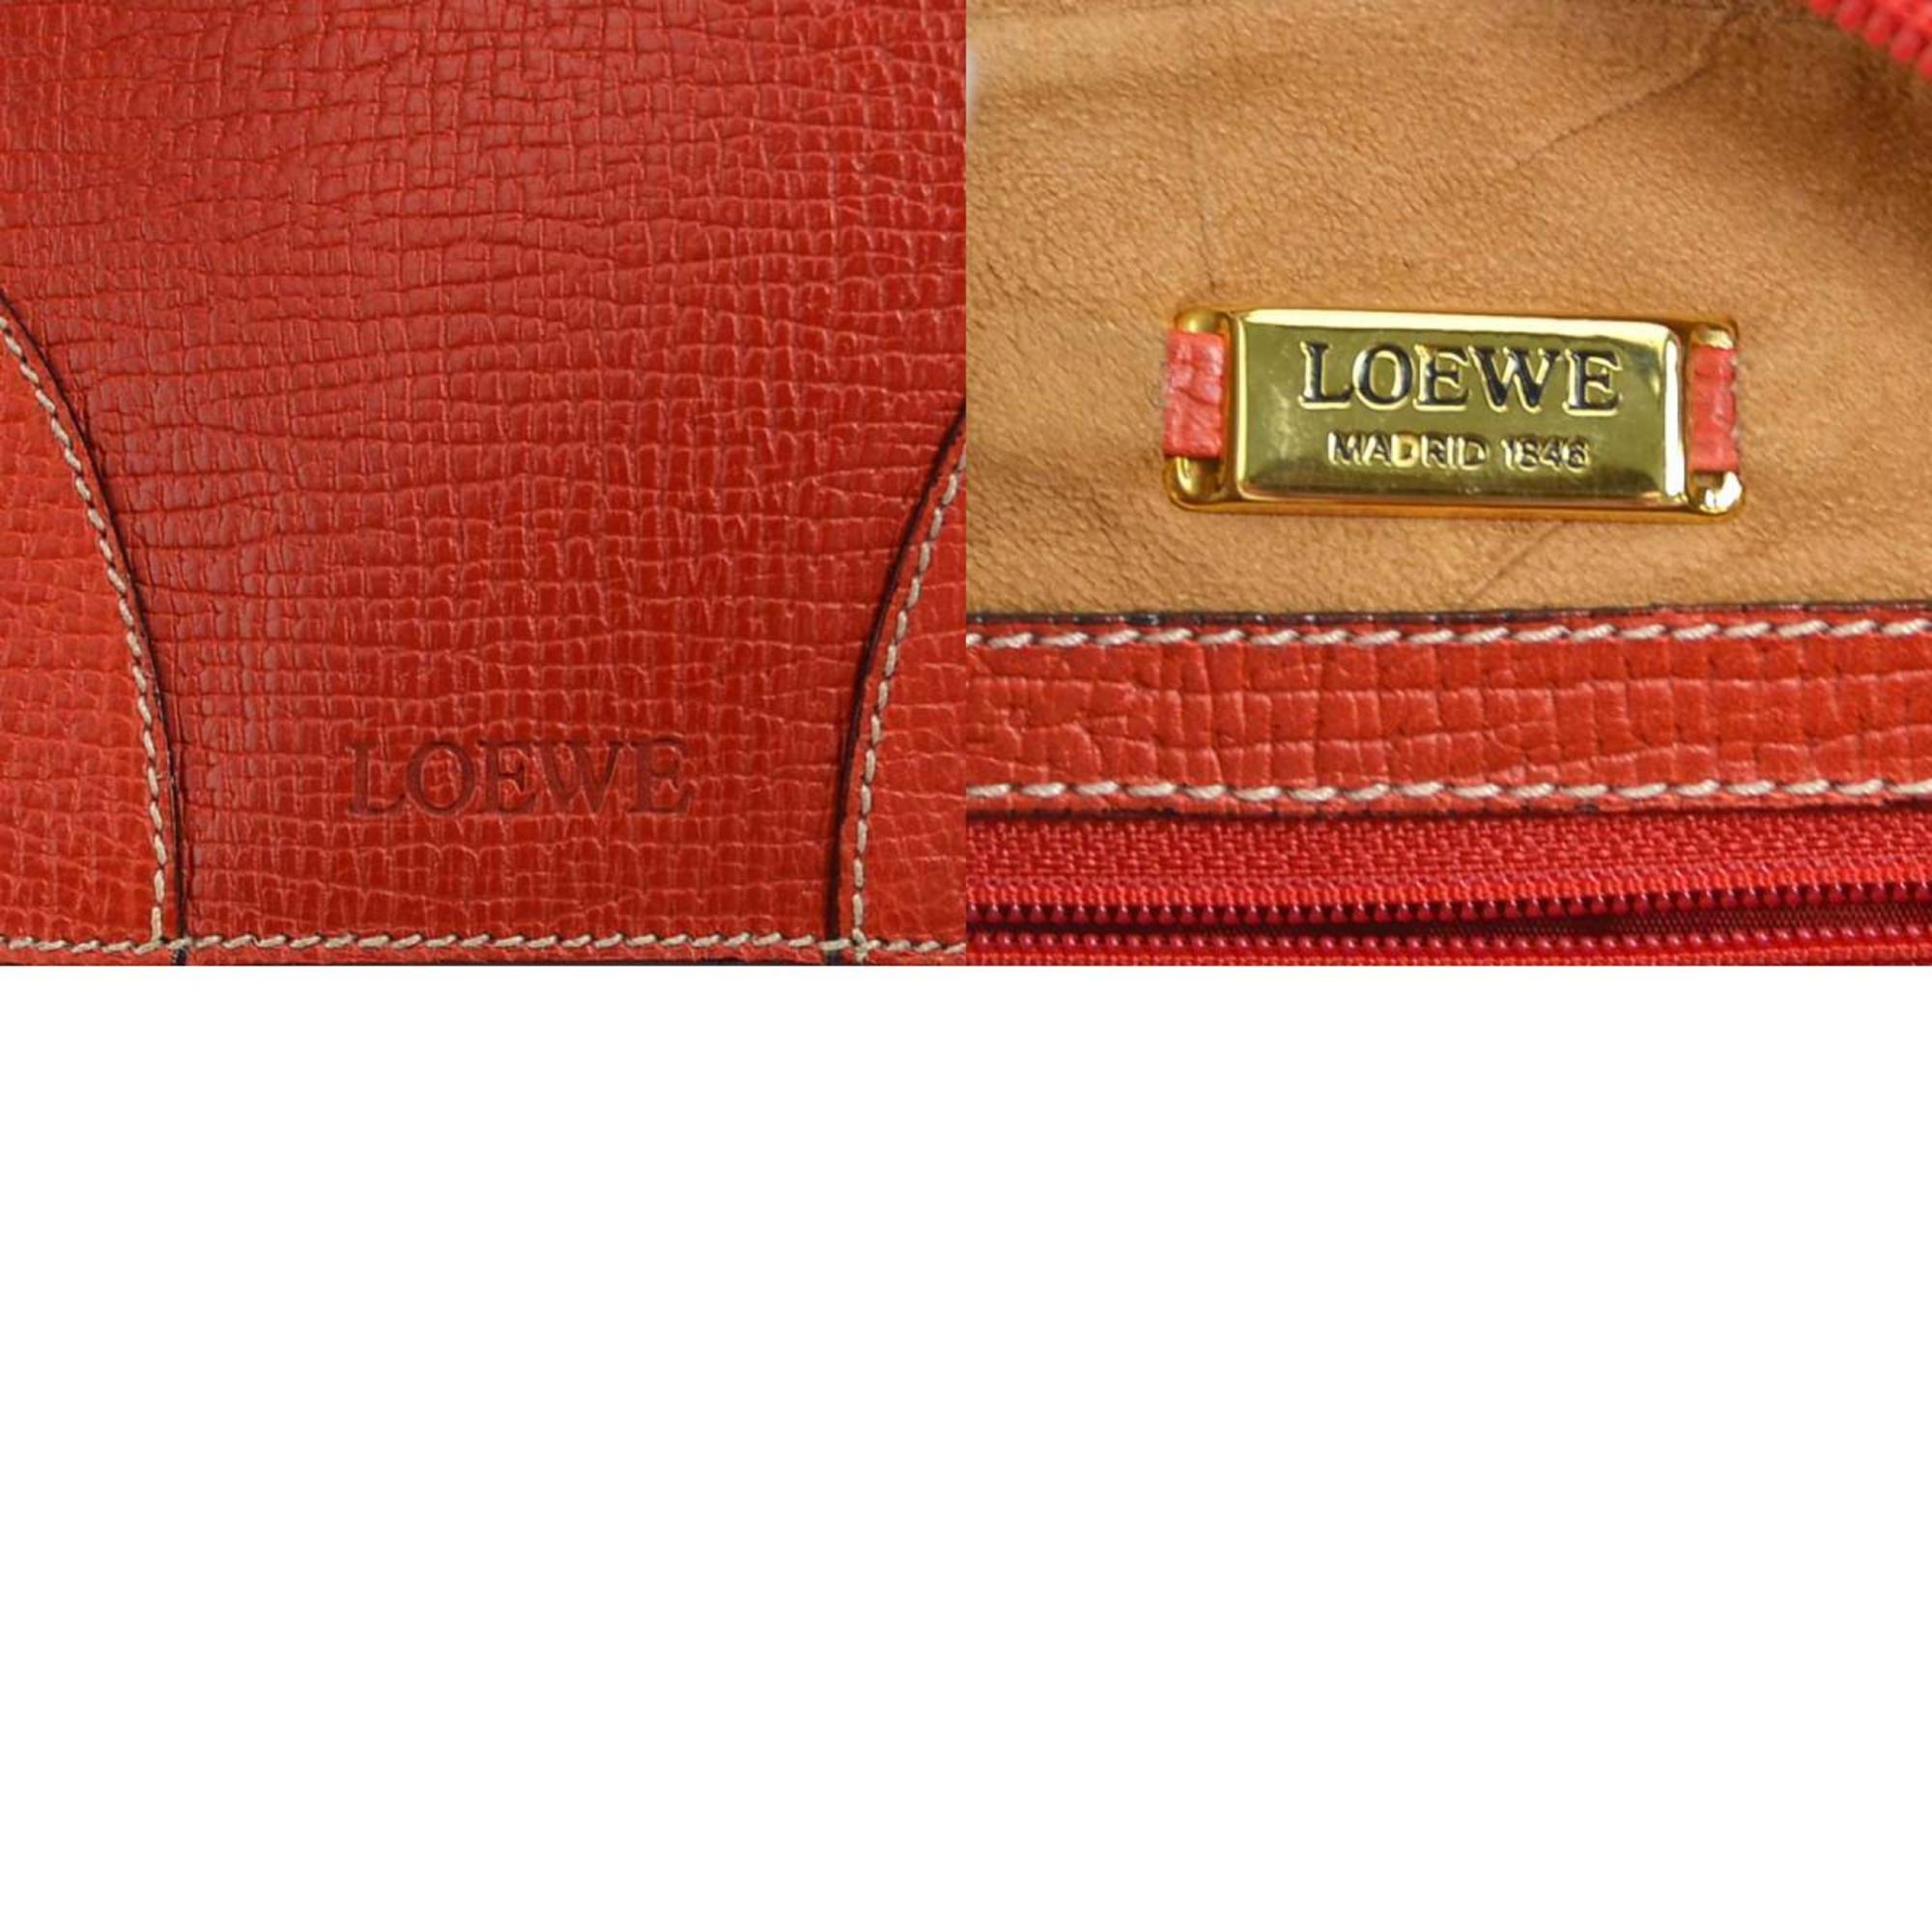 Loewe LOEWE handbag leather red gold ladies